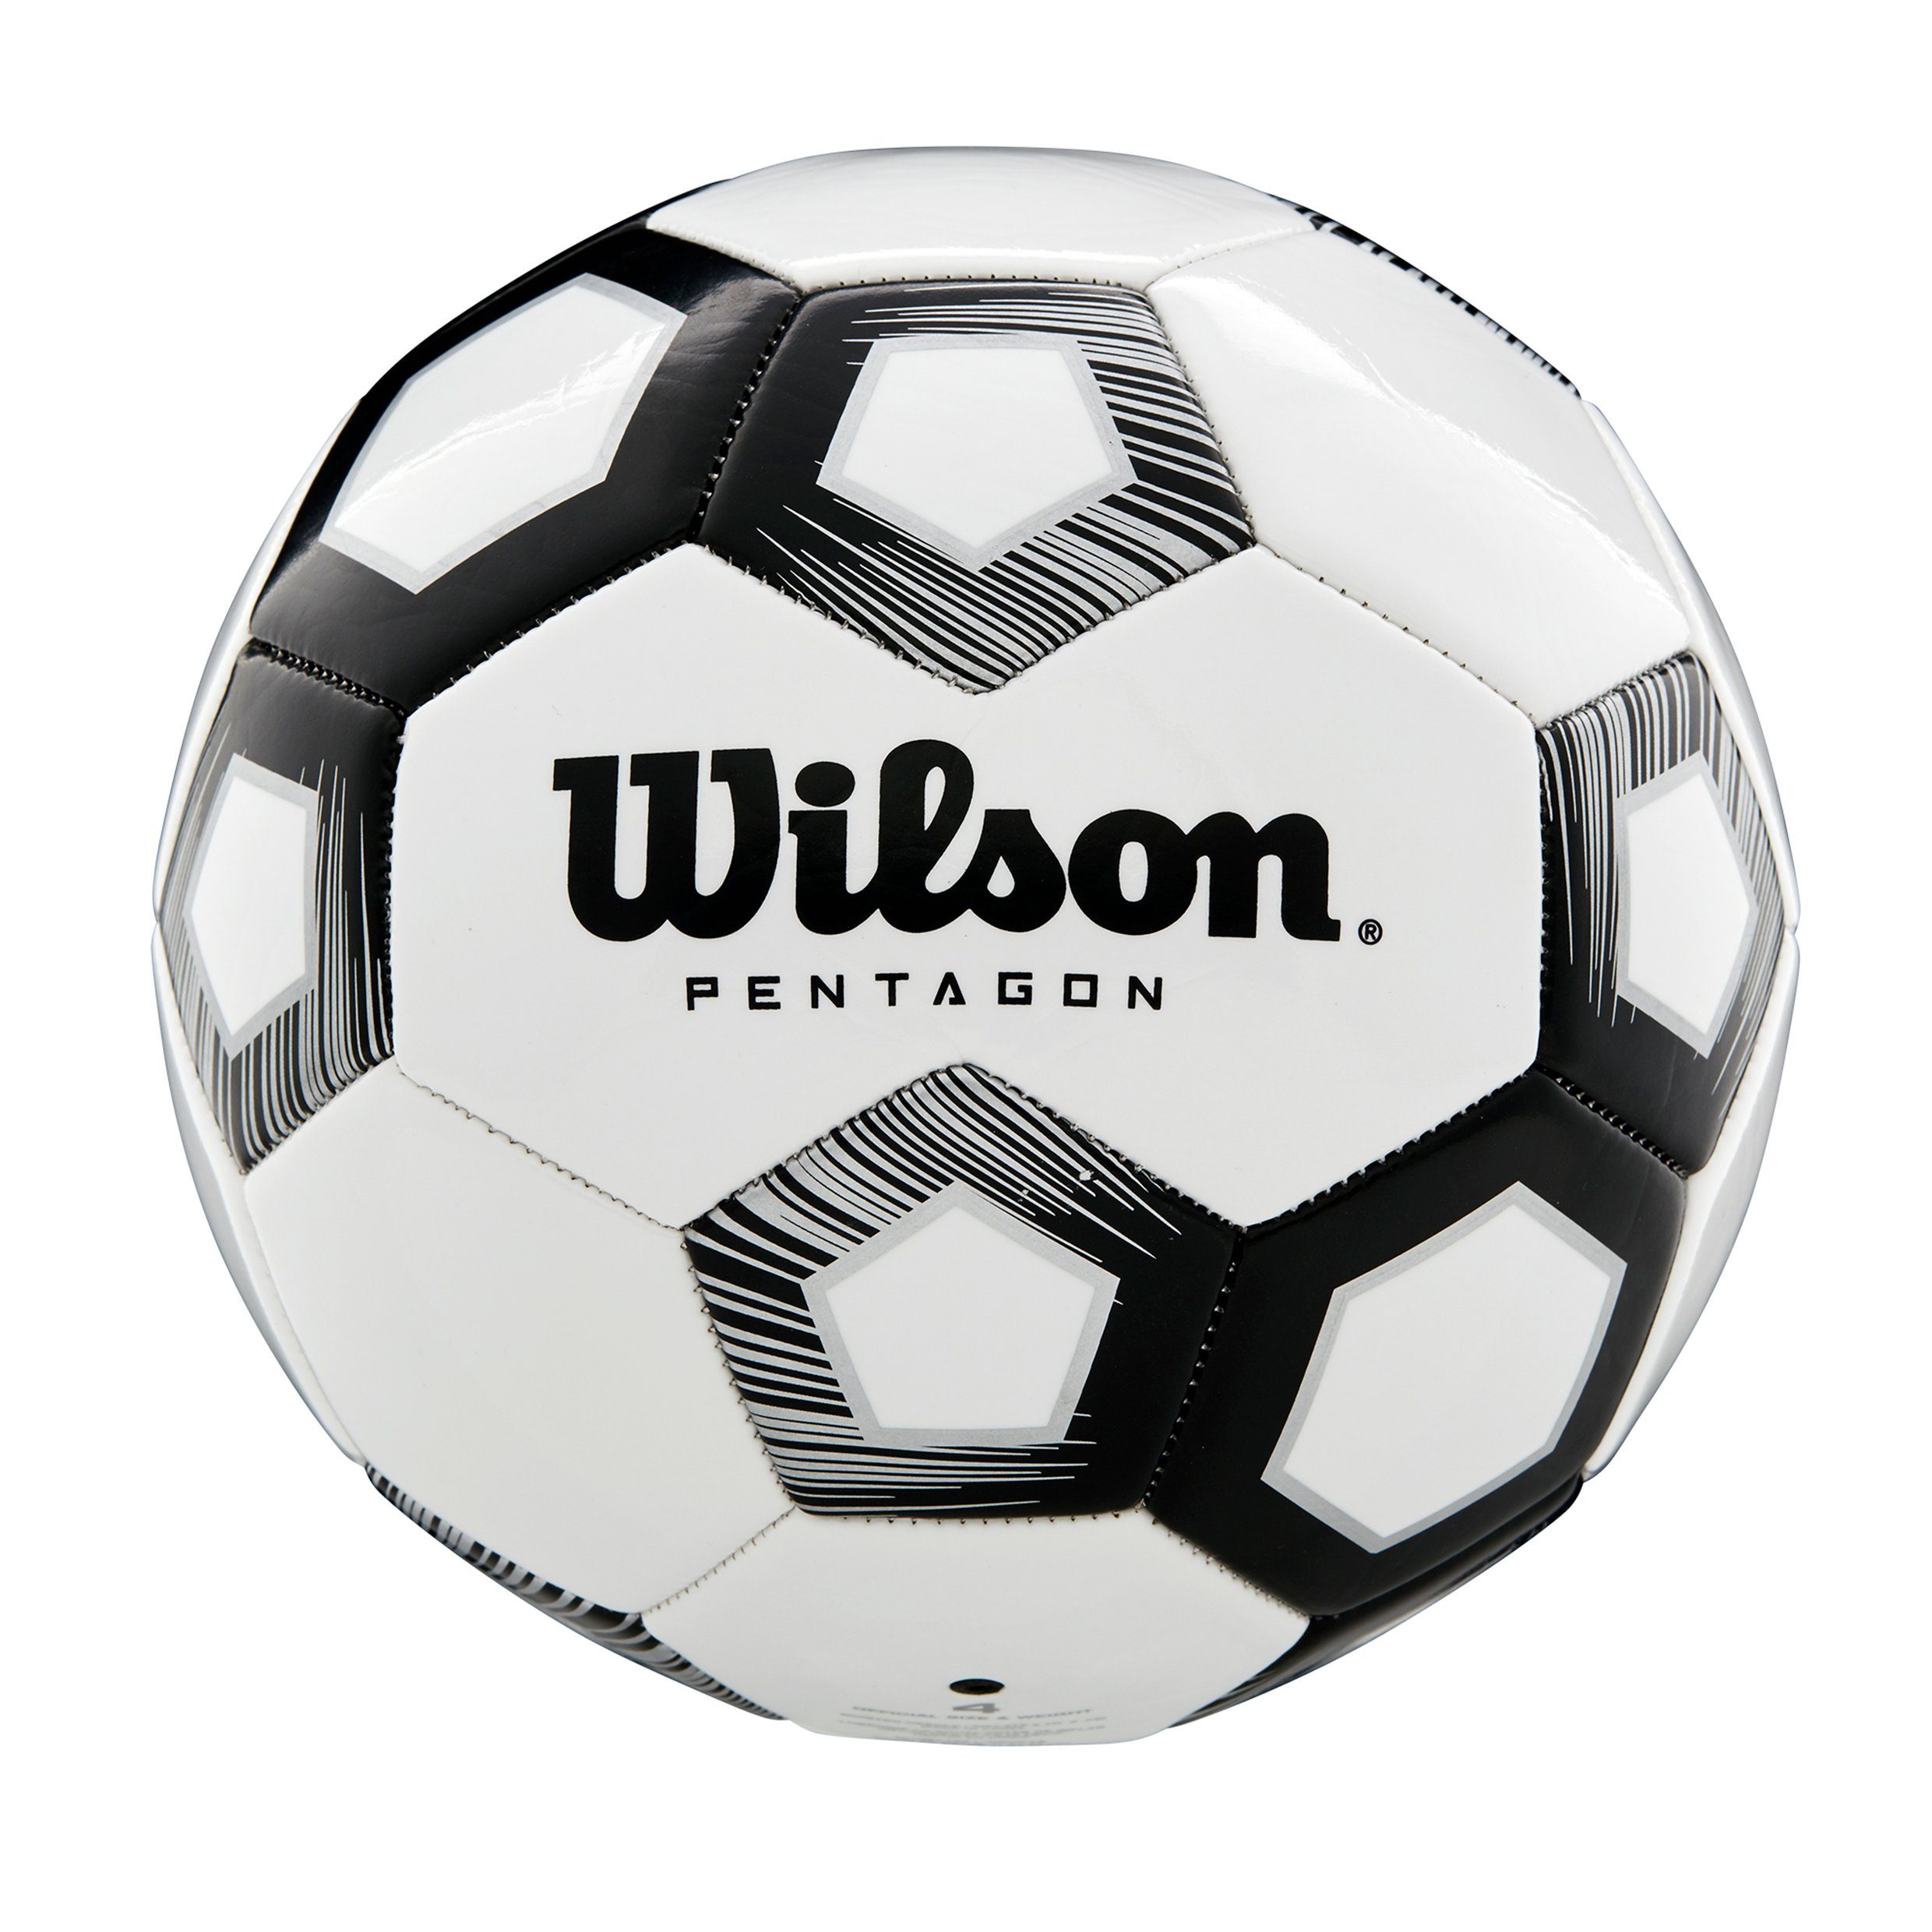 Wilson Fußball Wilson Fußball Pentagon, in Größe 5